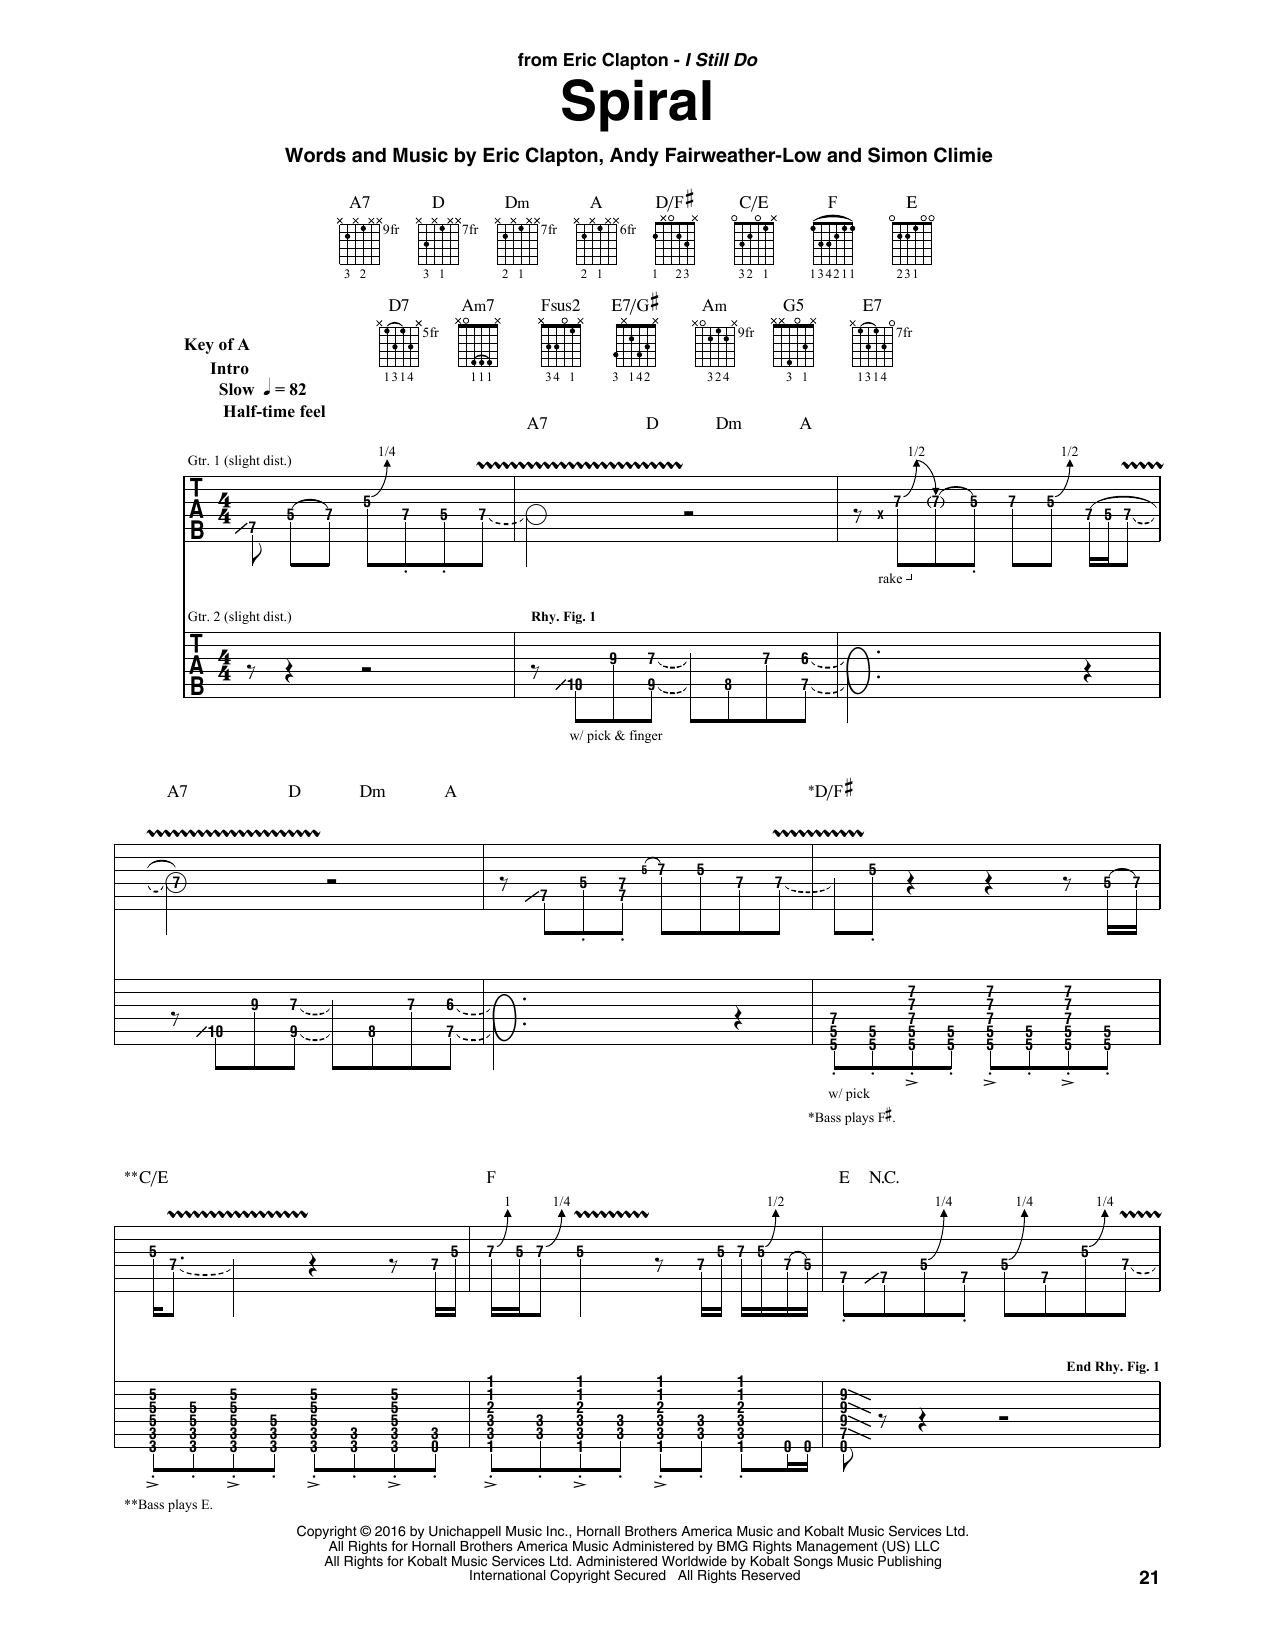 Download Eric Clapton Spiral Sheet Music